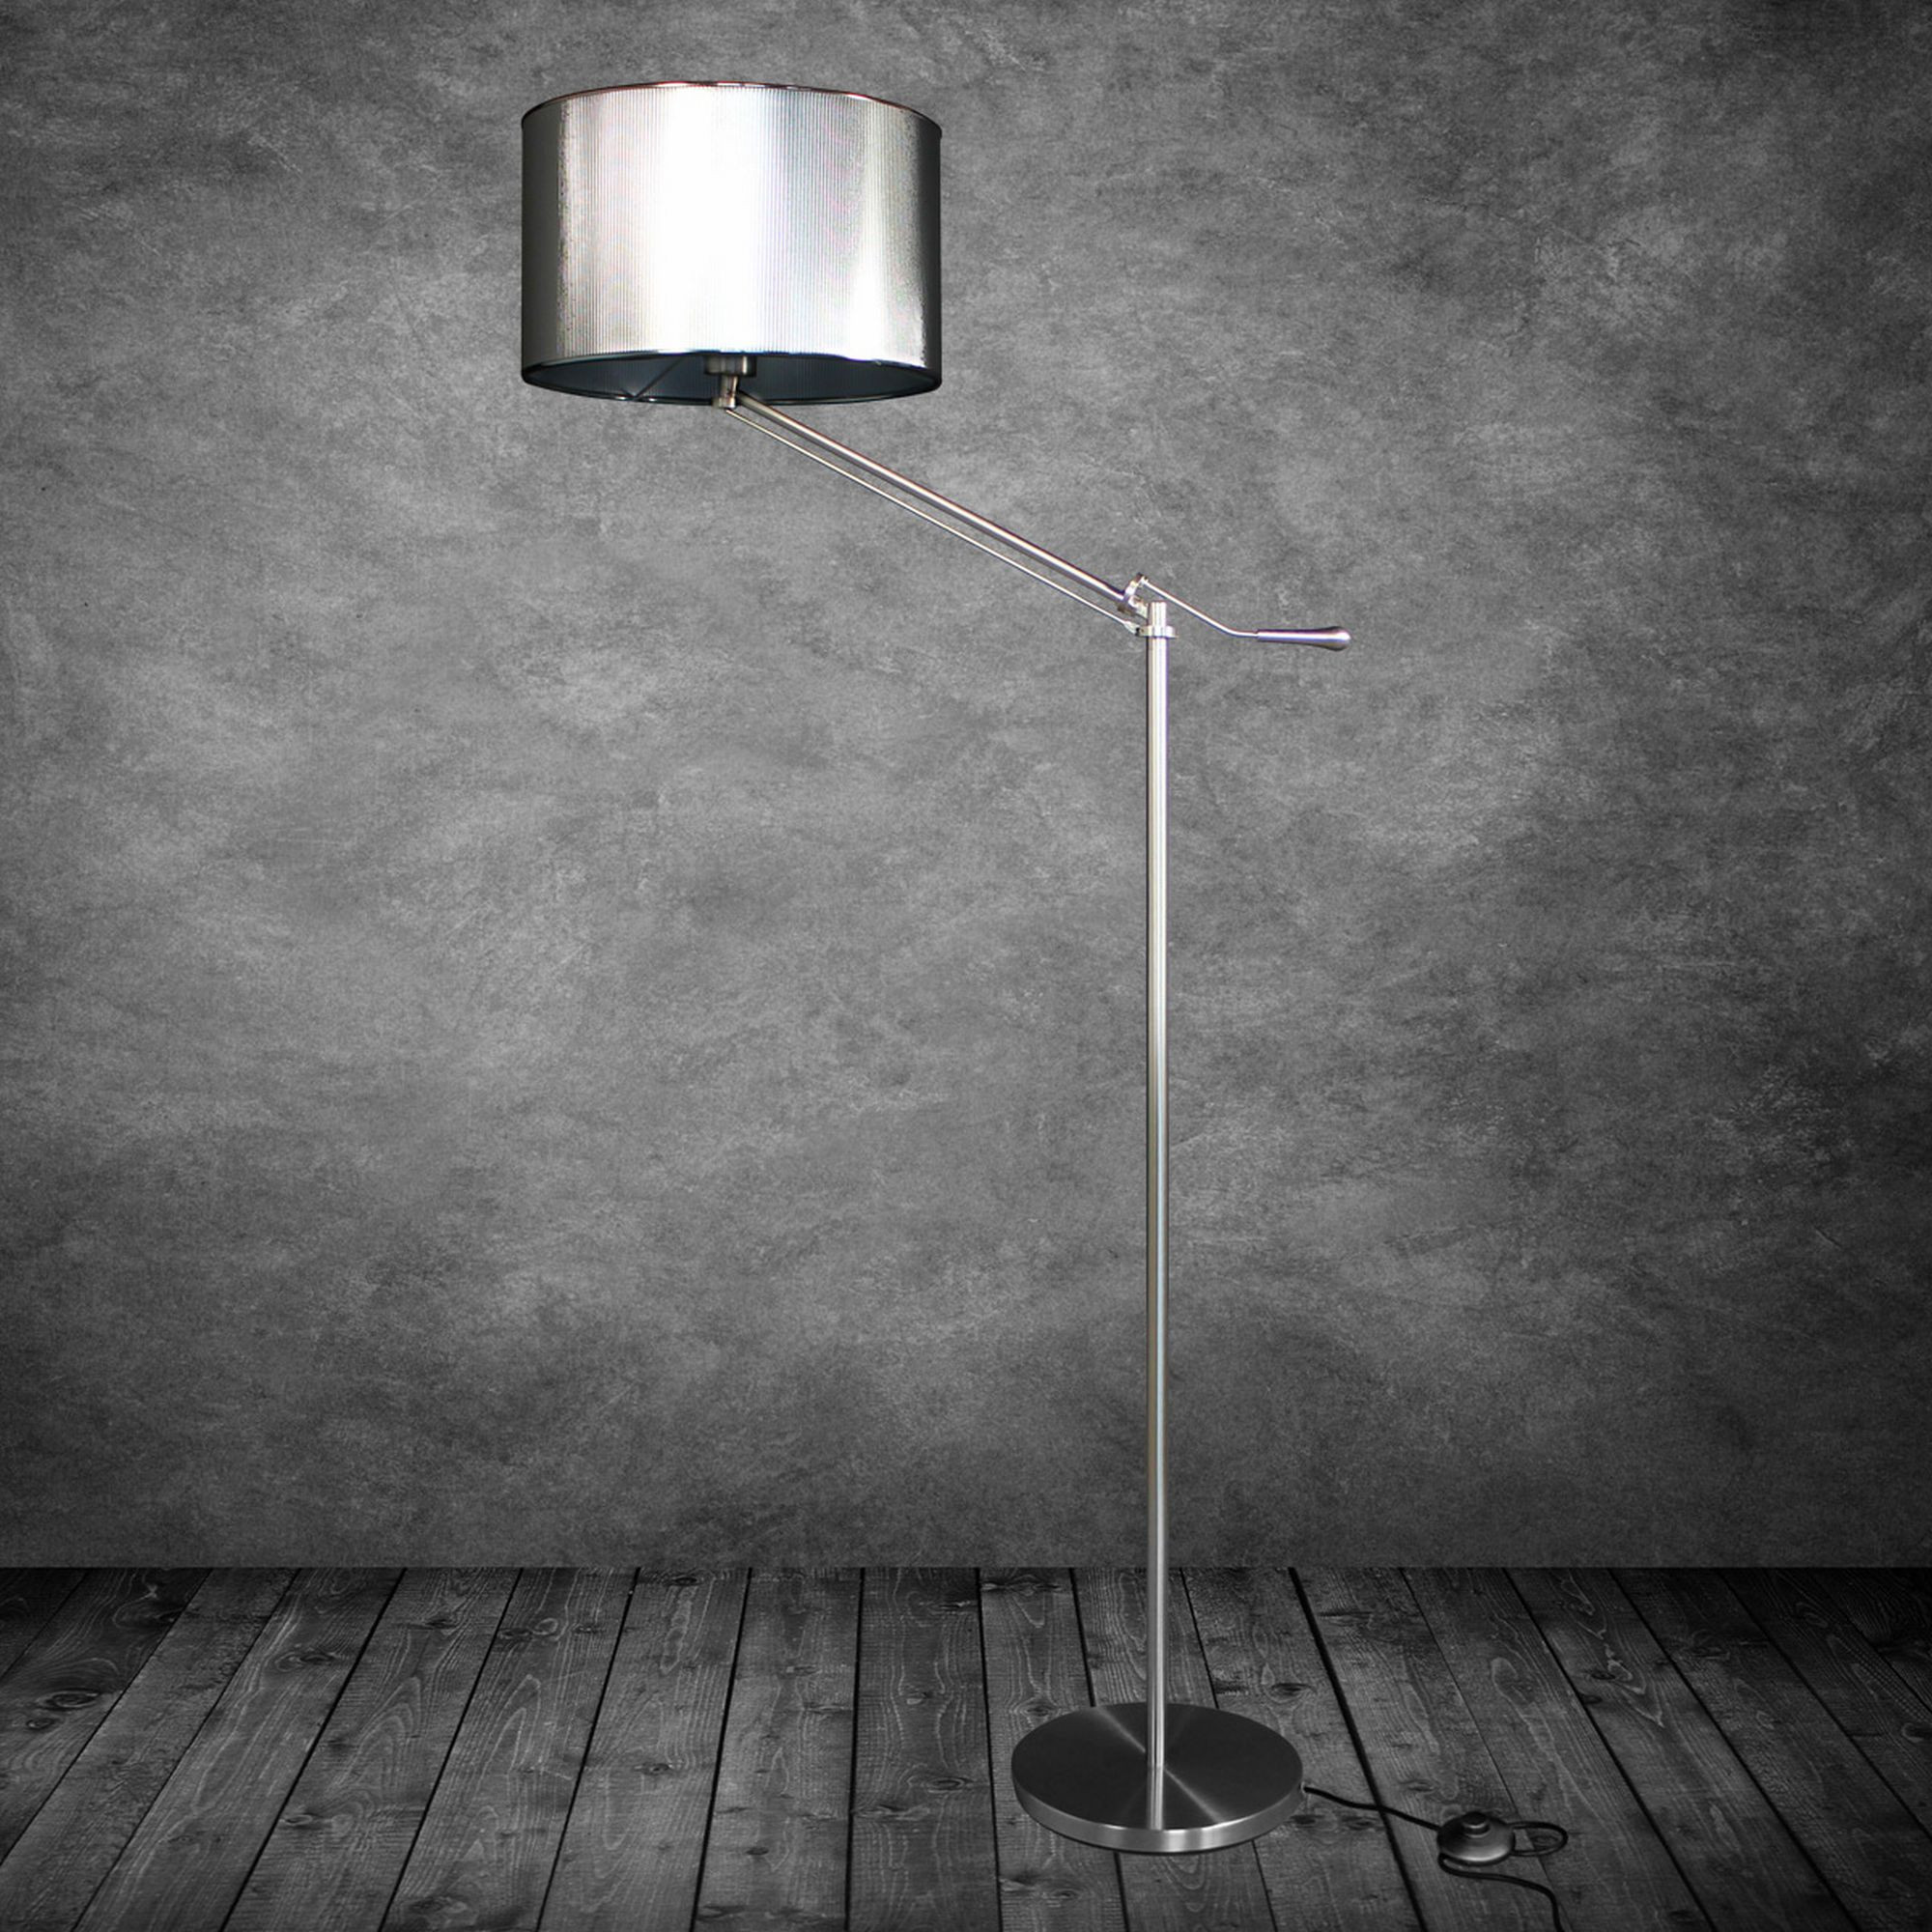 Stehlampe Wohnzimmer
 [luxo] Design Stehleuchte Stehlampe Wohnzimmer Lampe